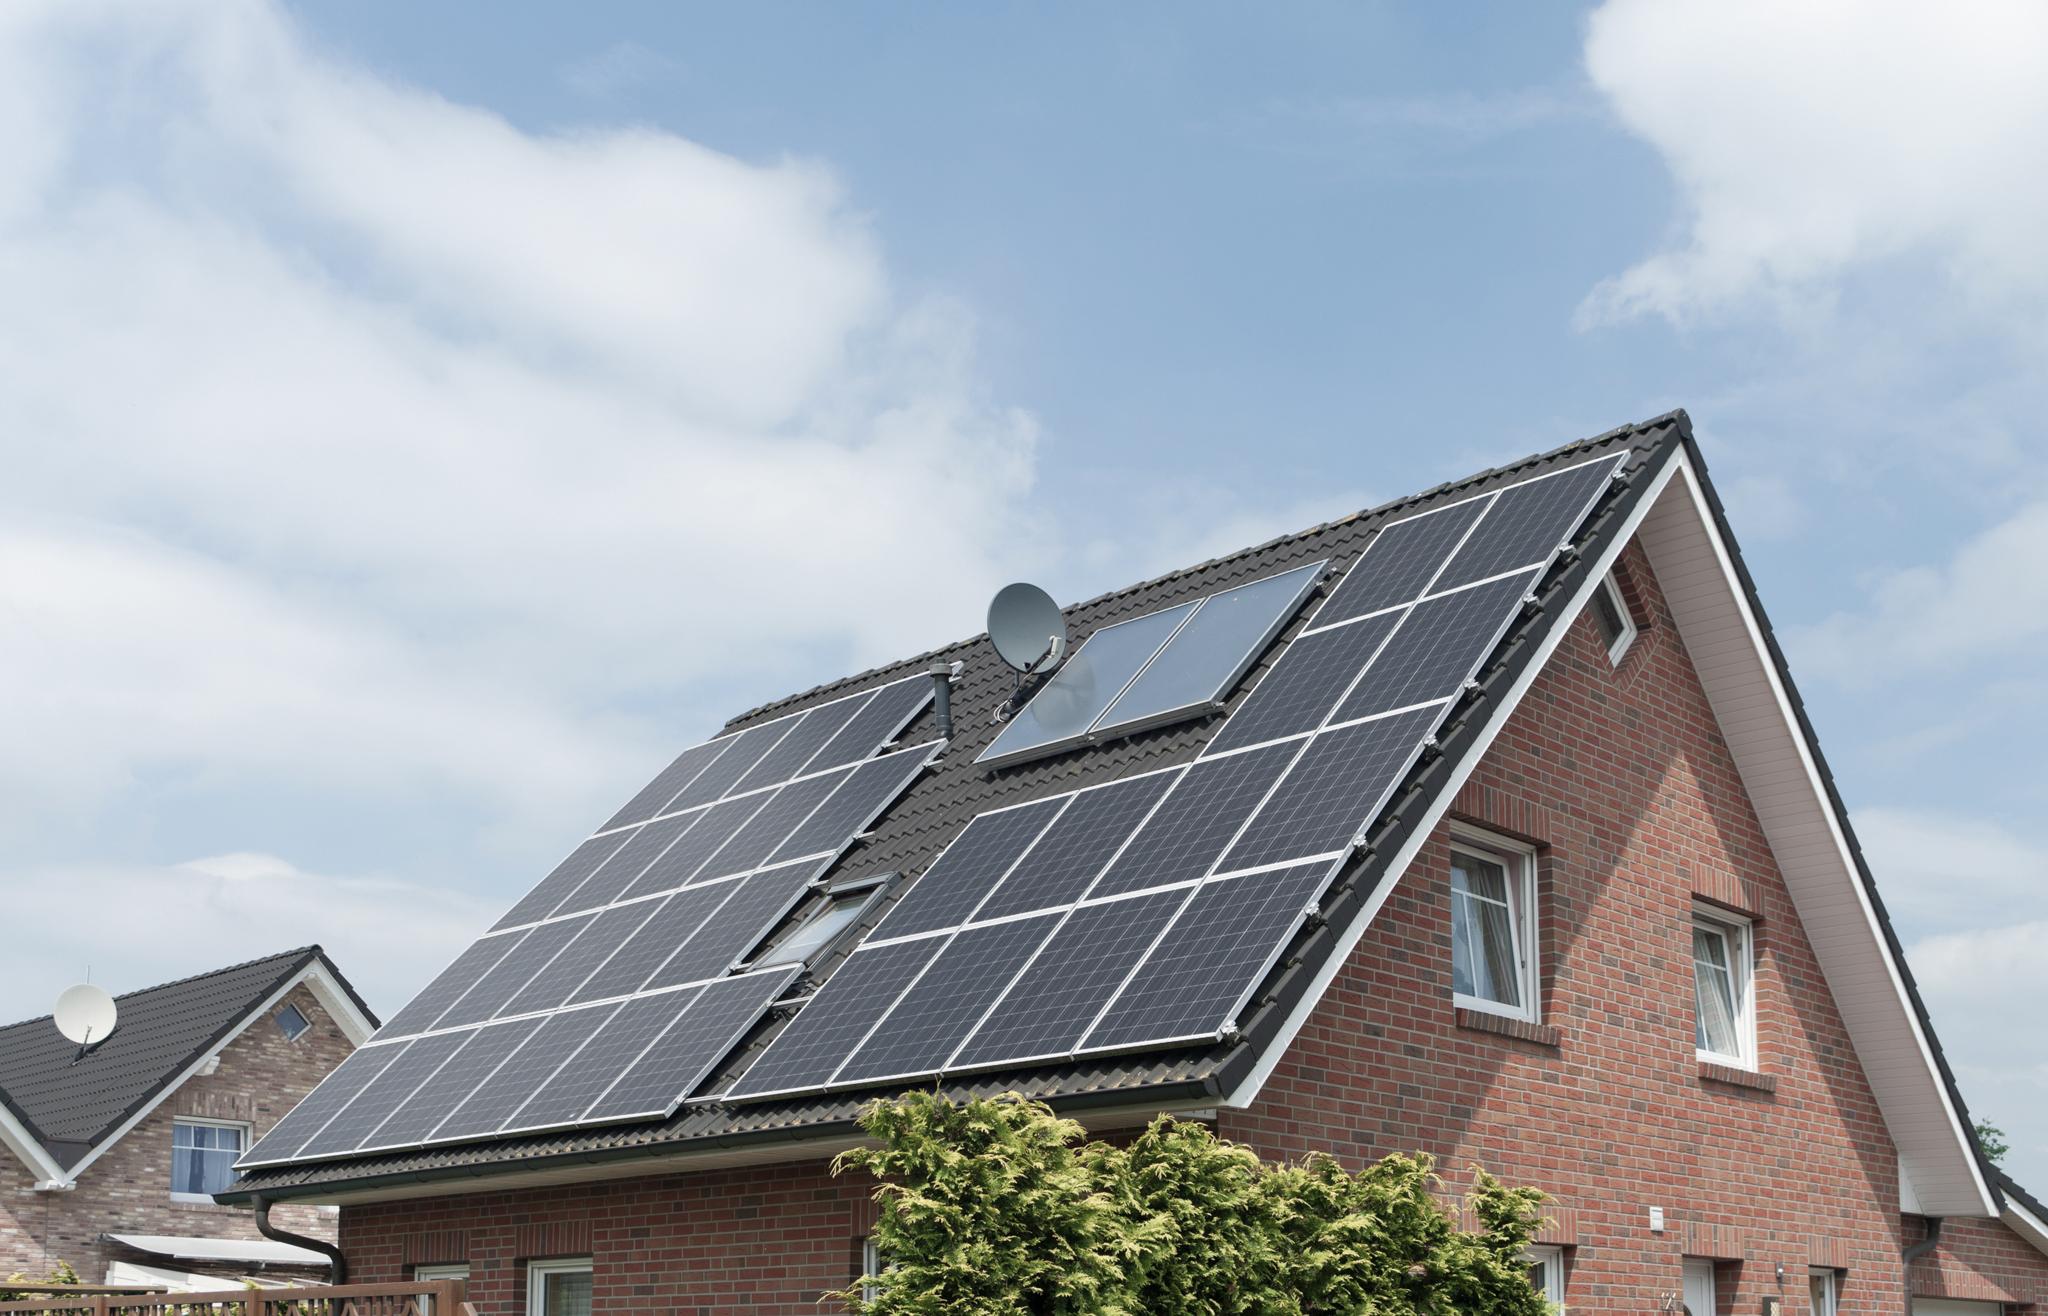 Einfamilienhaus mit Solaranlage auf dem Dach - AC Batteriespeicher